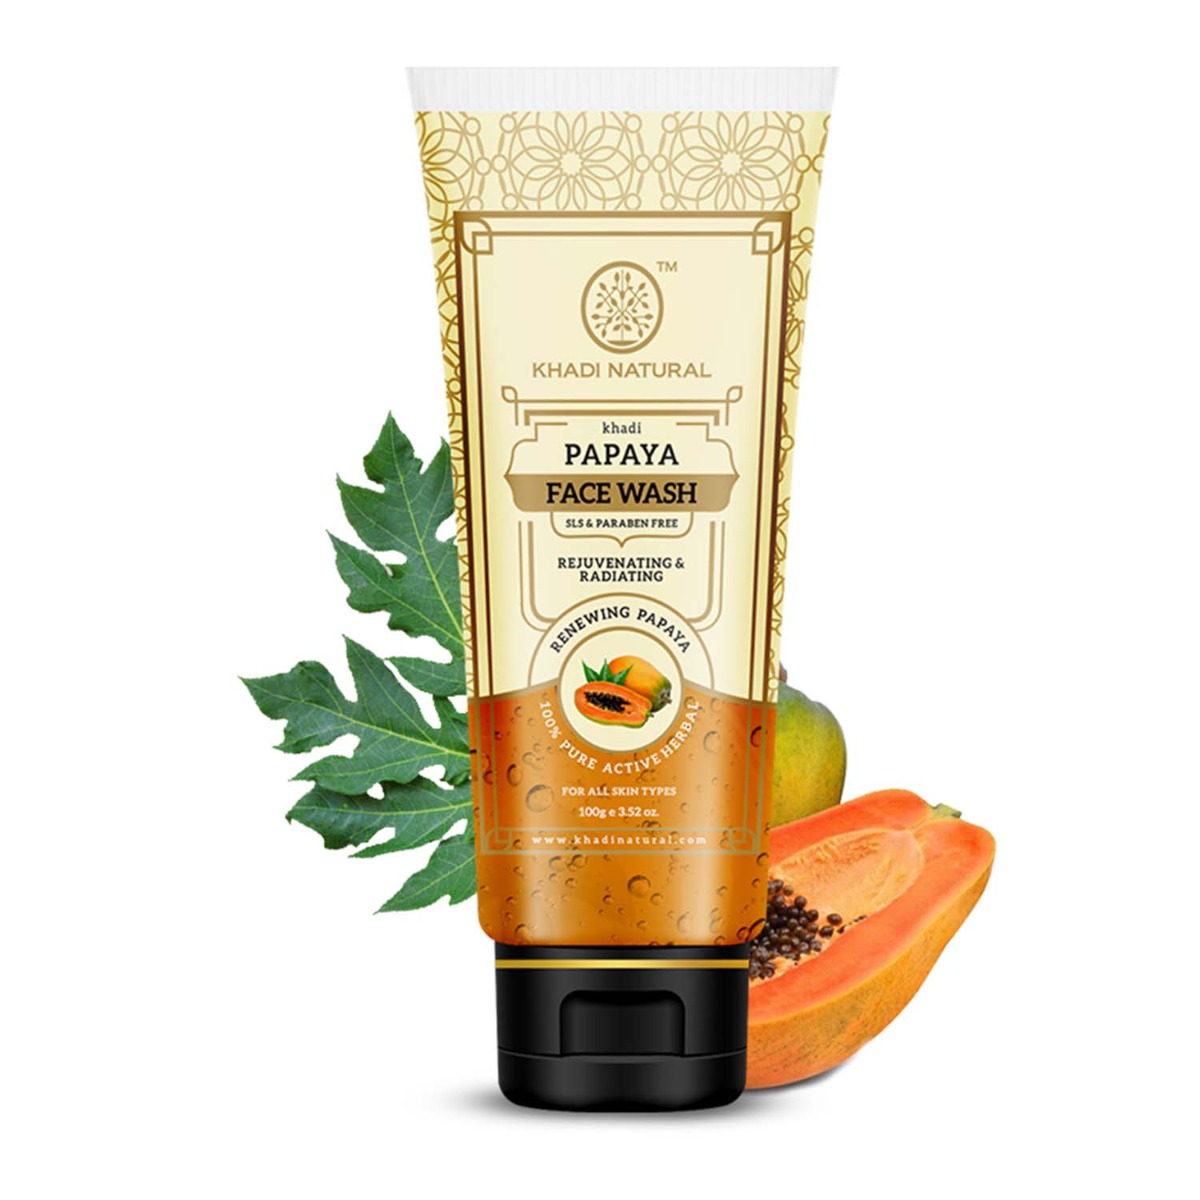 Khadi Natural Papaya Face Wash Sls & Paraben Free, 100gm